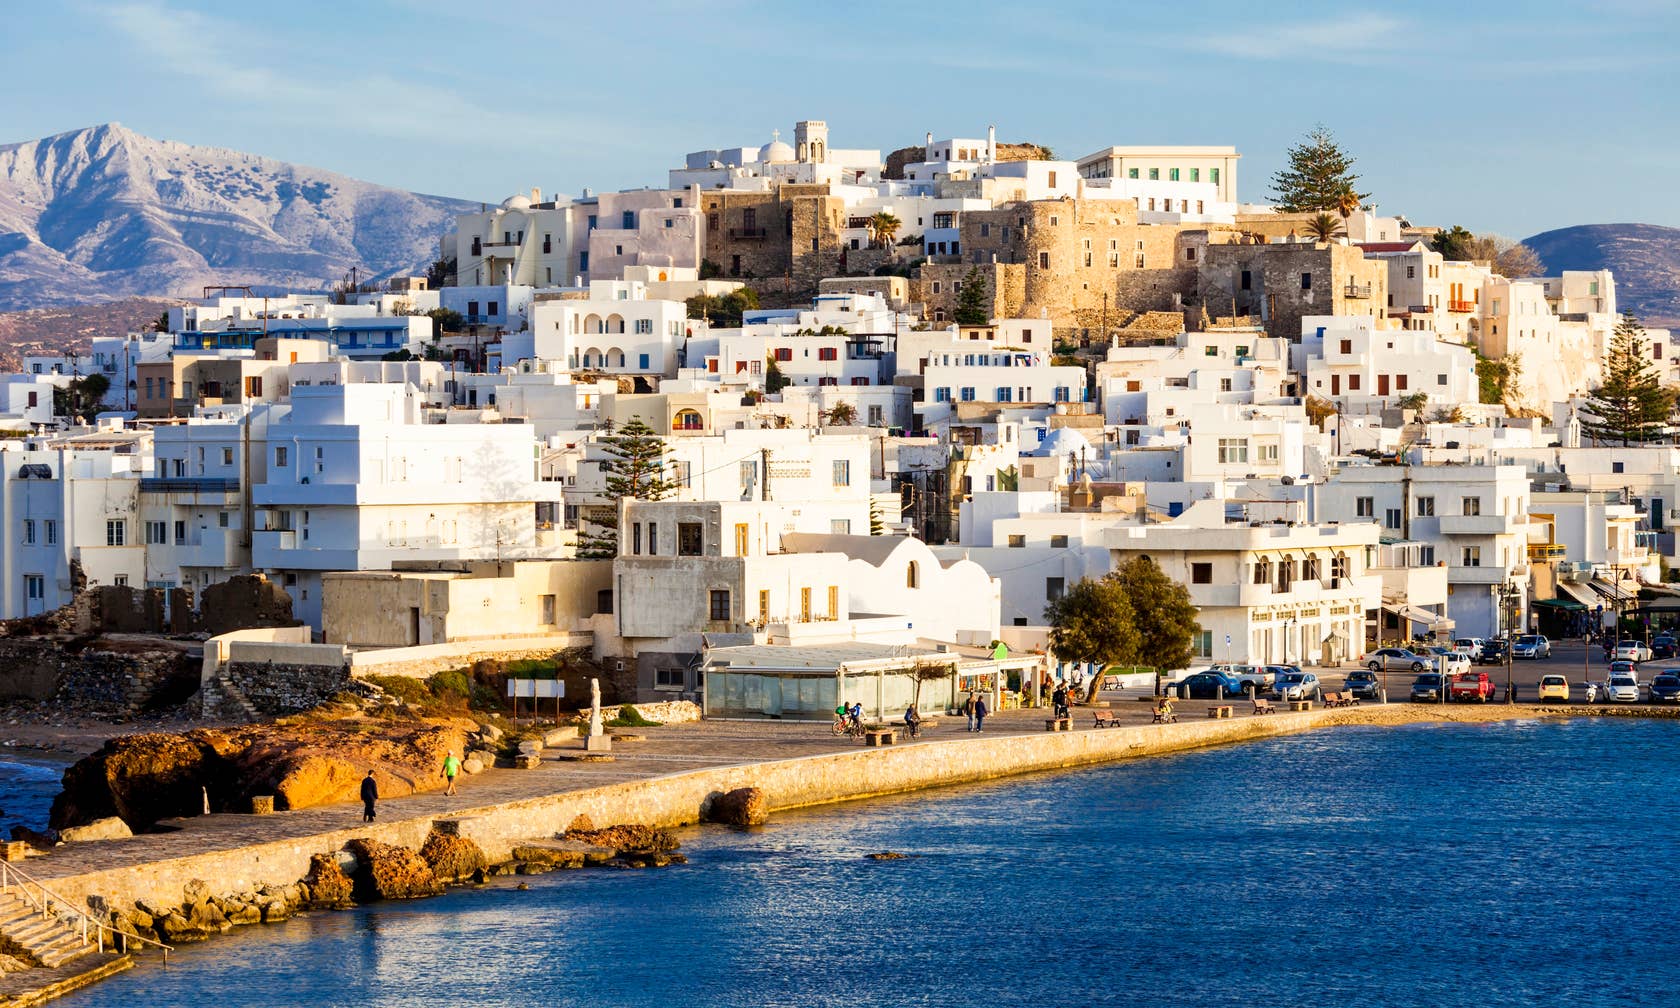 Naxos vacation rentals